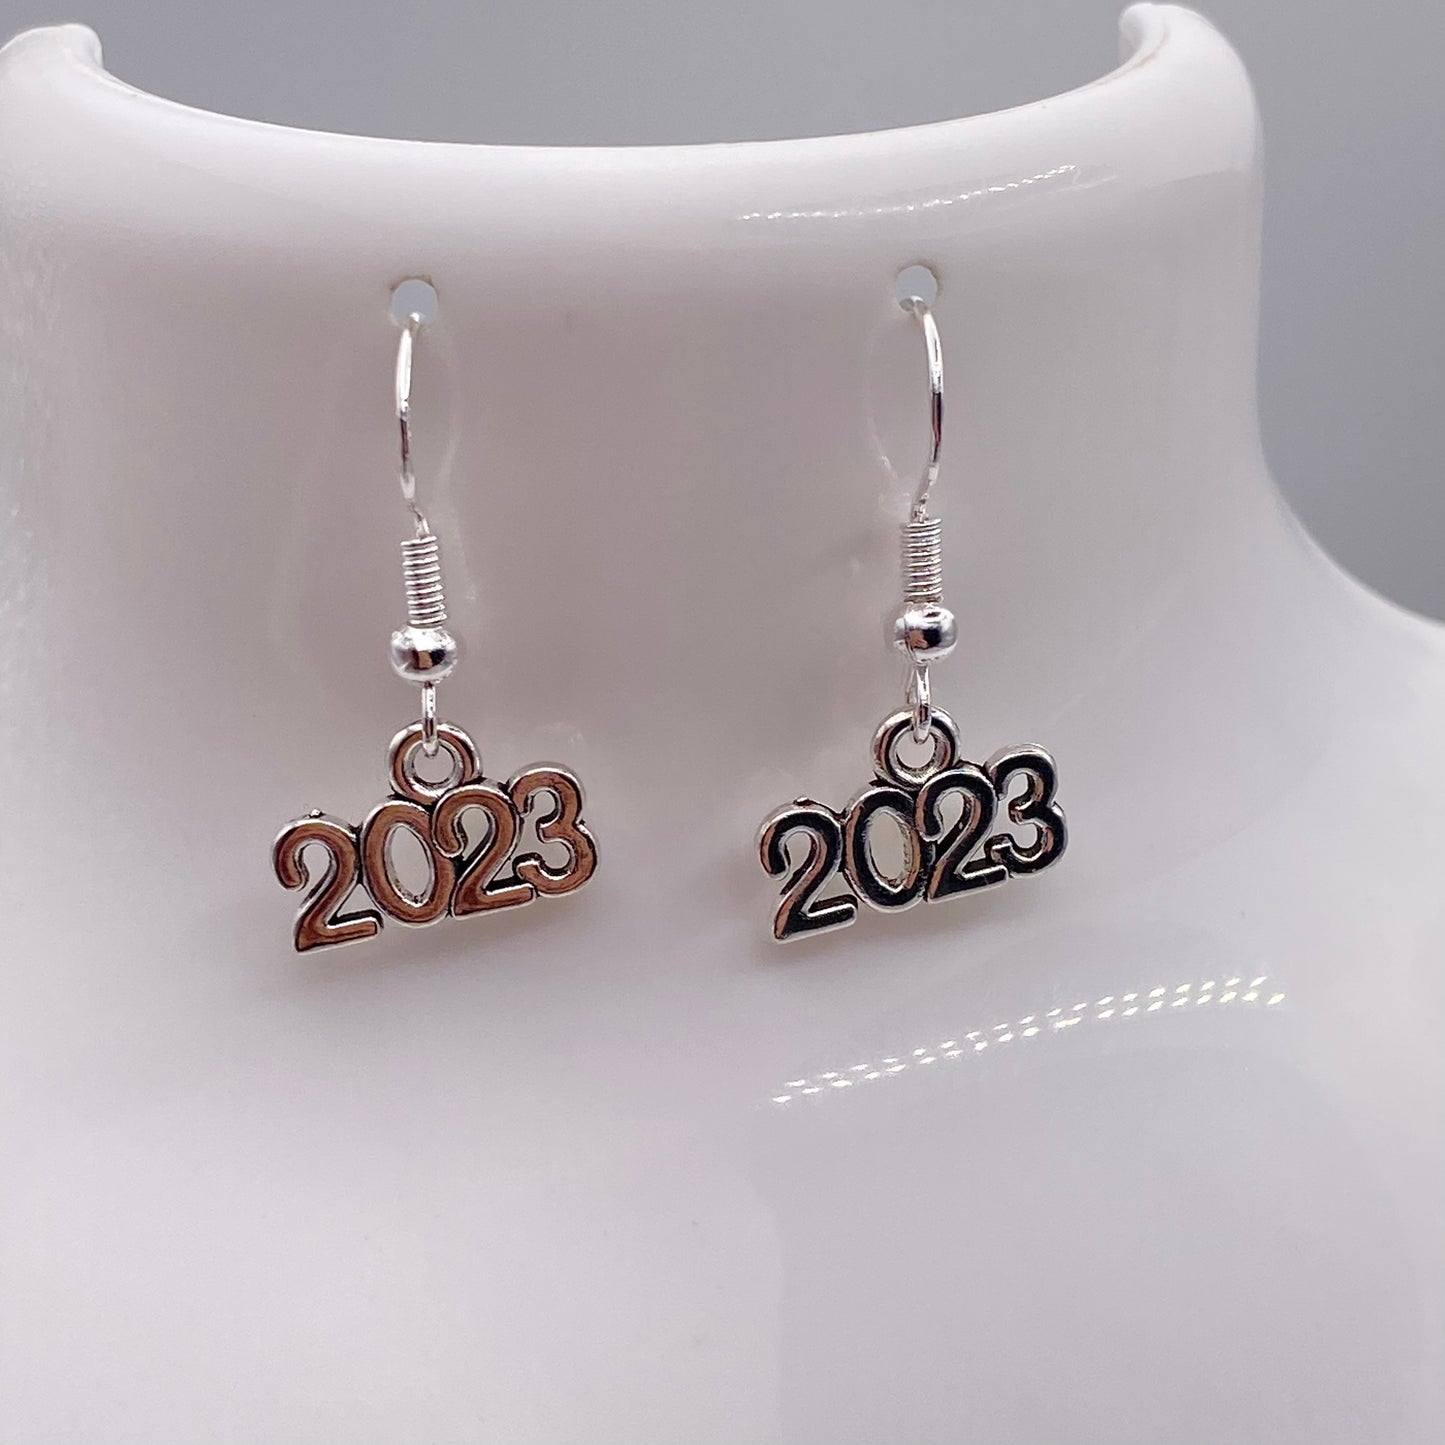 Silver 2023 Earrings